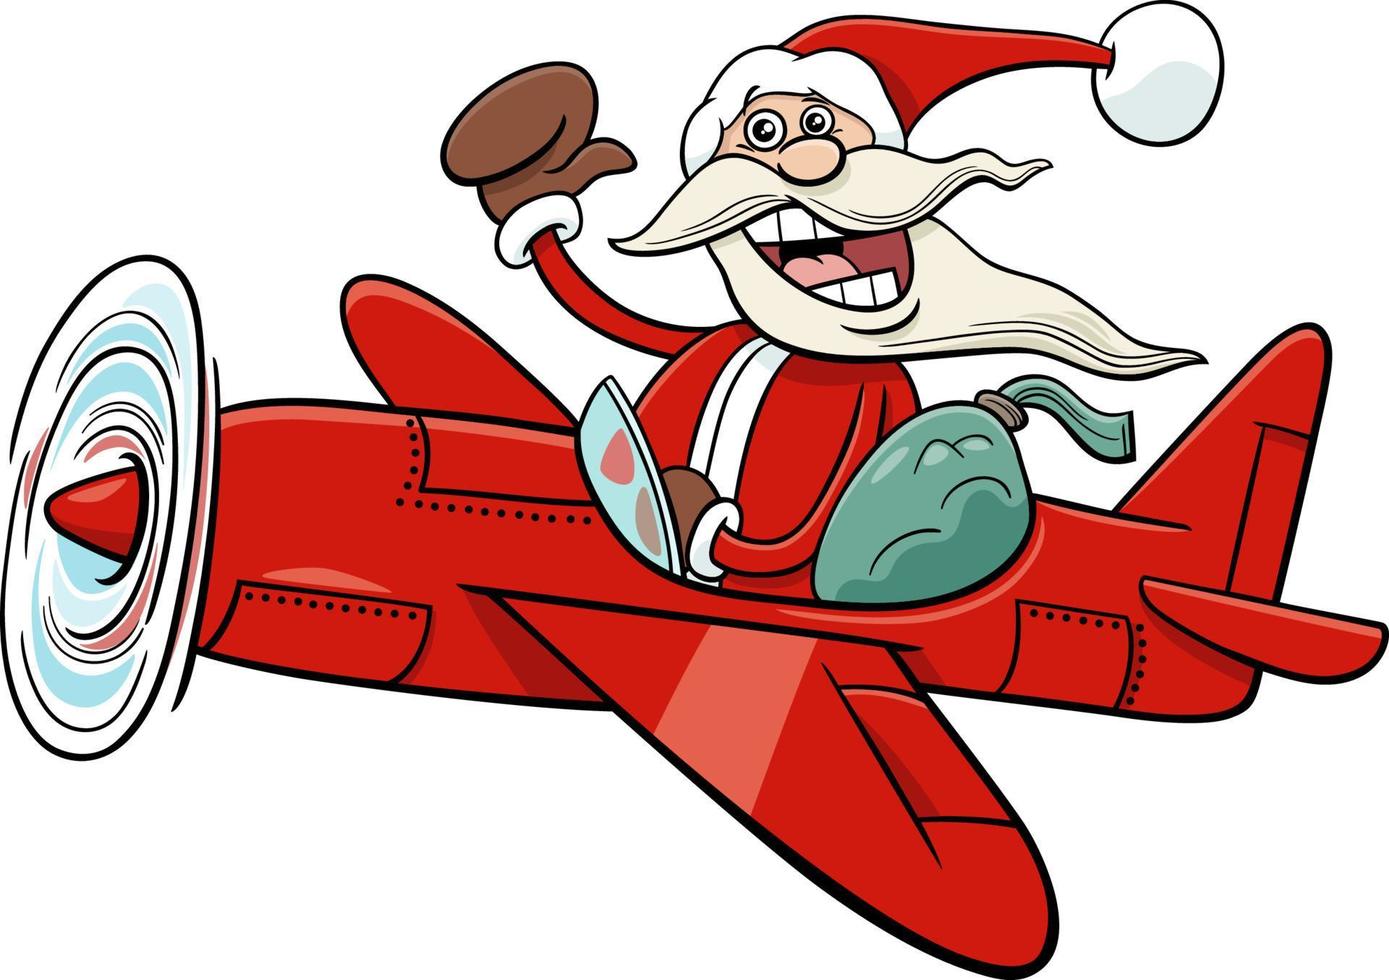 Weihnachtsmann-Zeichentrickfigur im Flugzeug zur Weihnachtszeit vektor